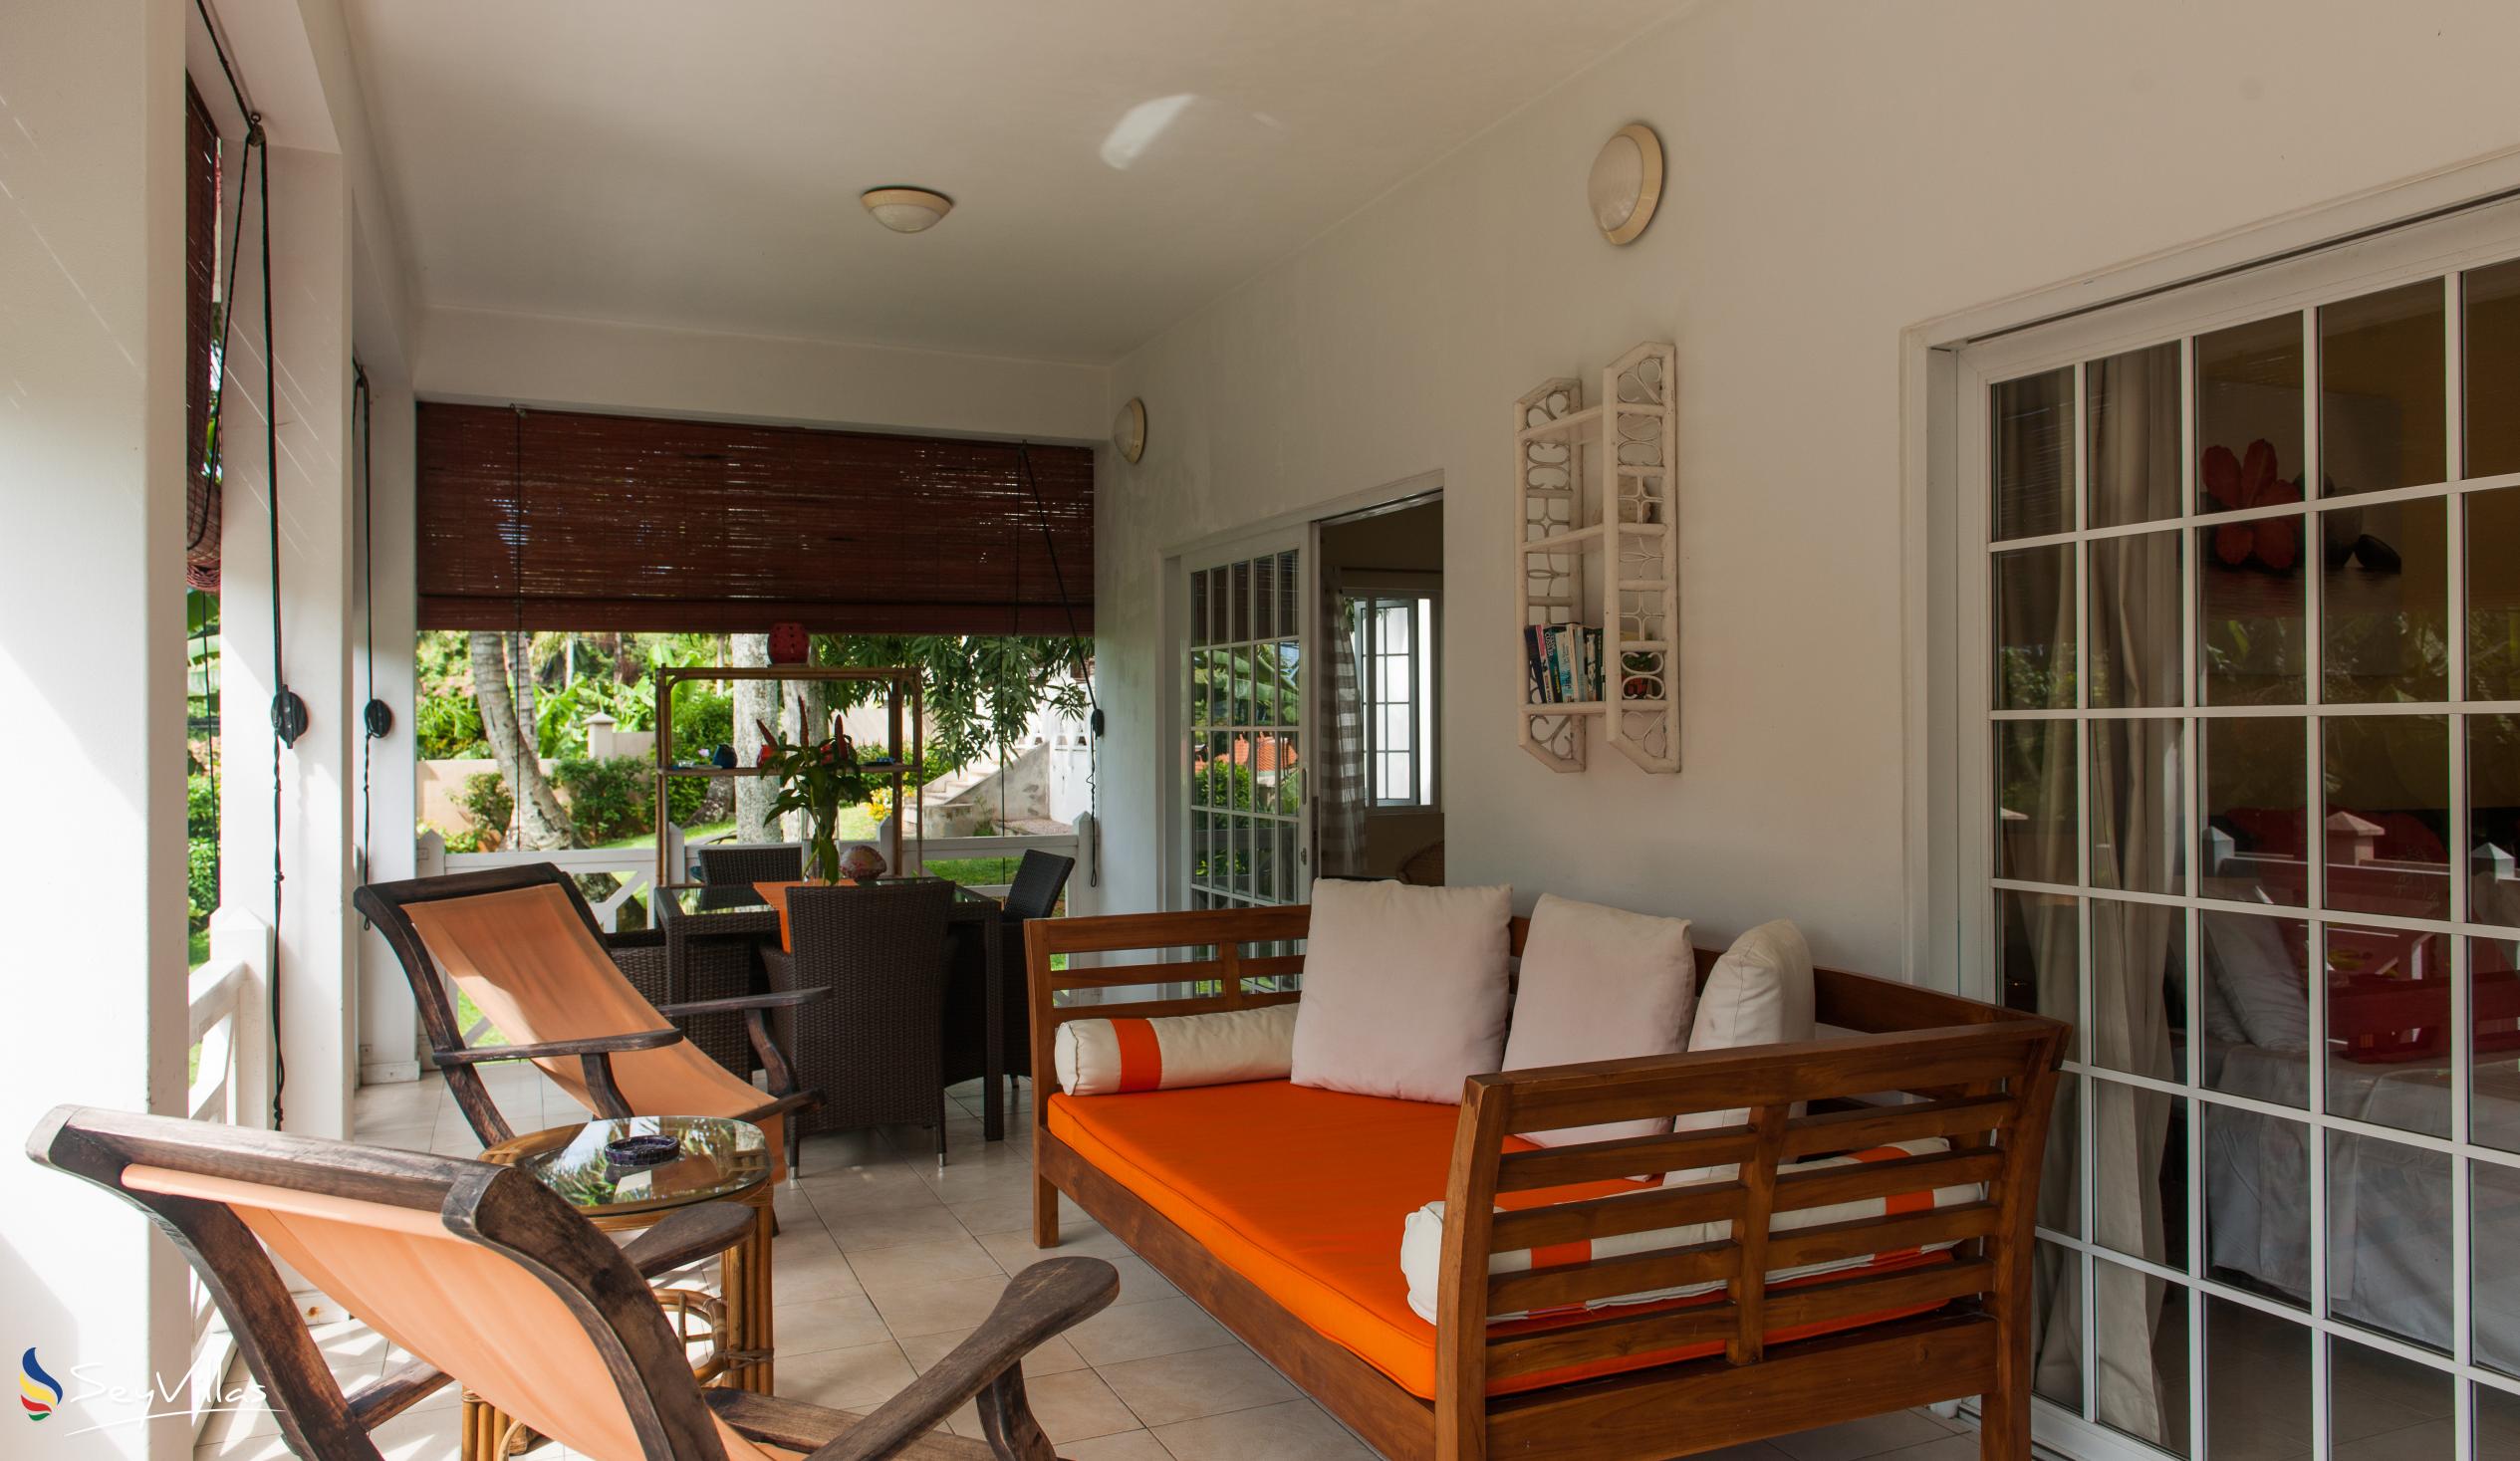 Photo 73: Le Domaine de Bacova - Ground Floor Apartment - Mahé (Seychelles)